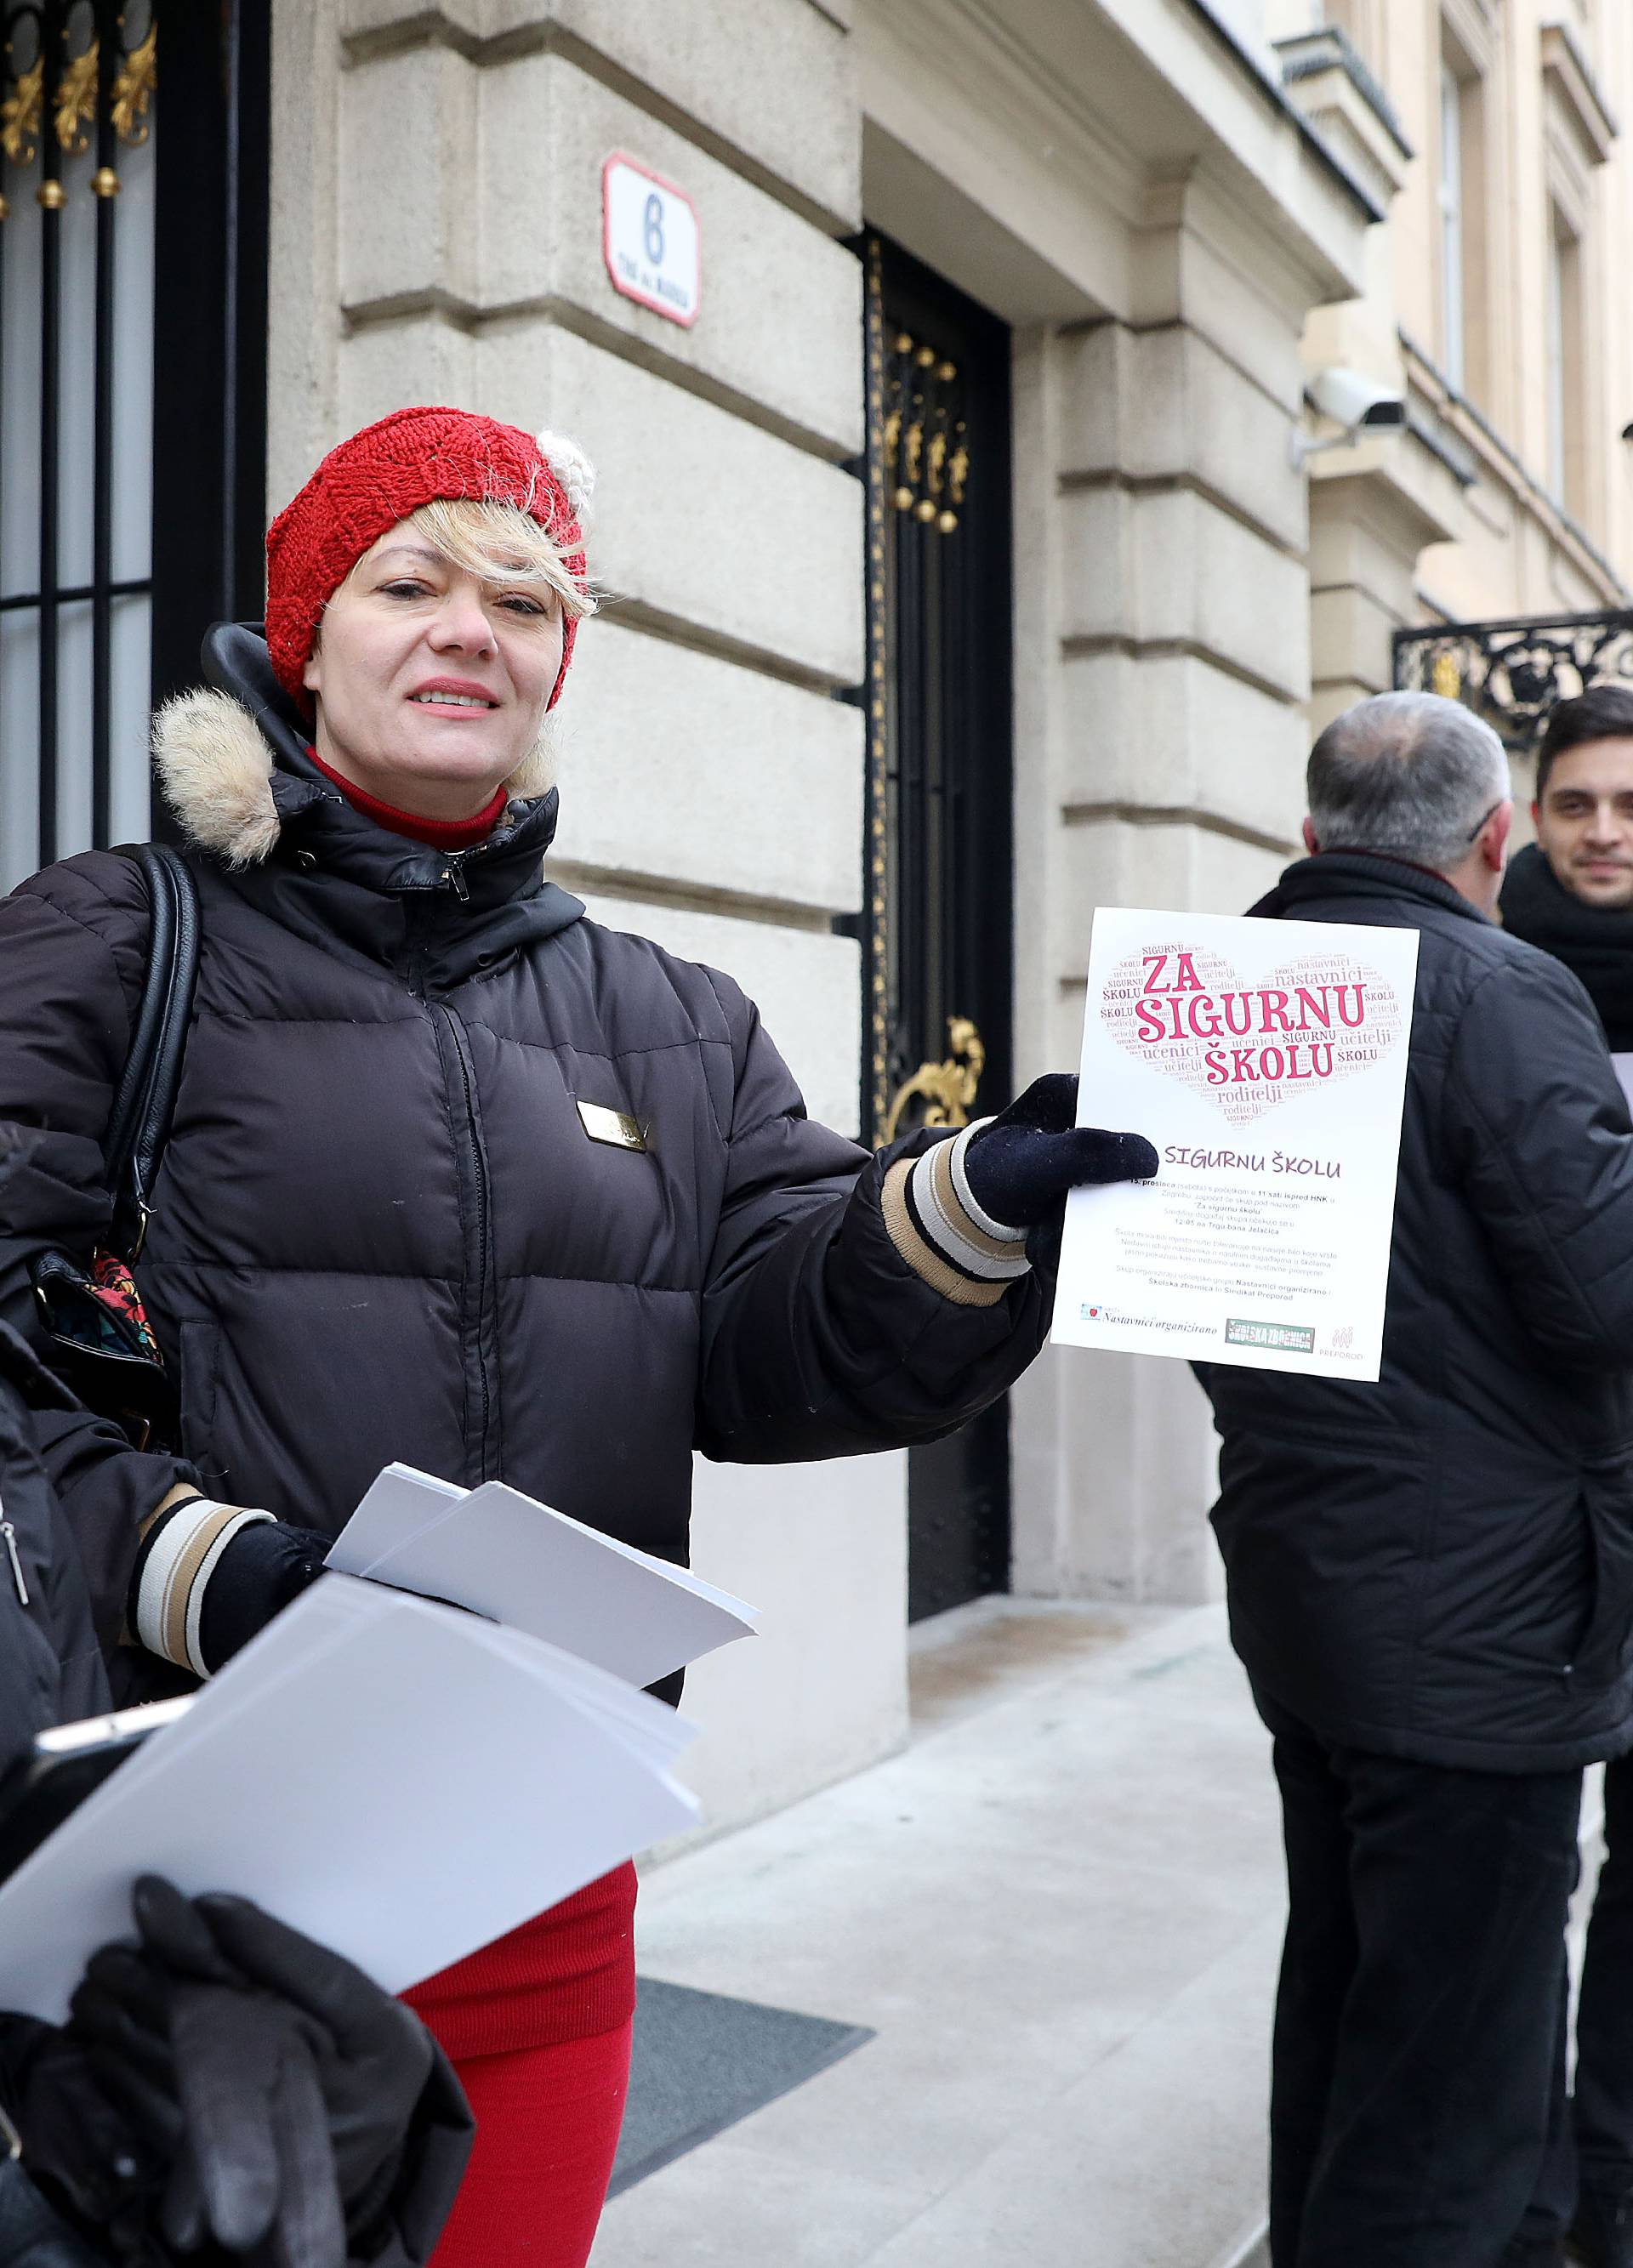 Zagreb: Nastavnici i sindikat Preporod za sigurnu Å¡kolu